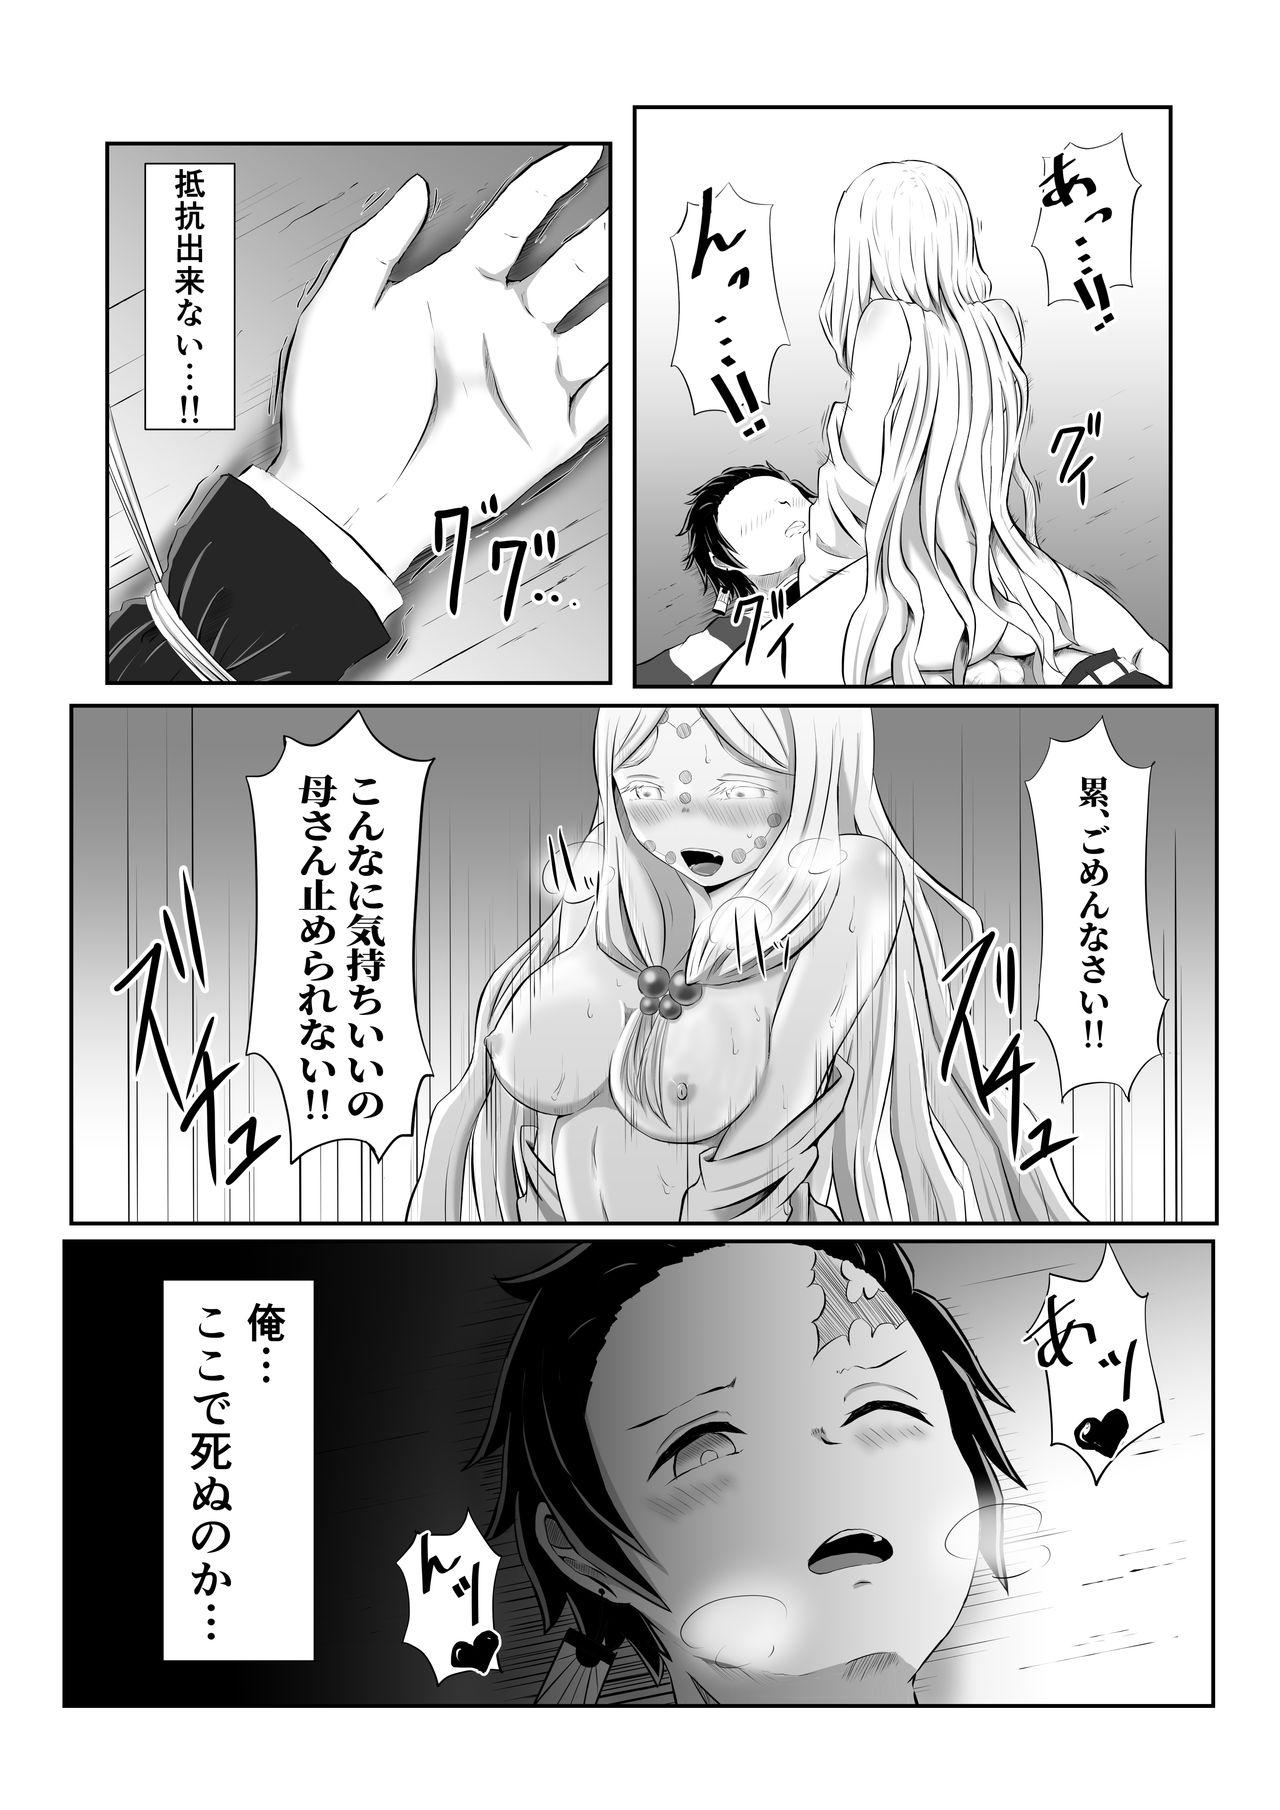 Liveshow Hinokami Sex. - Kimetsu no yaiba | demon slayer Dress - Page 20